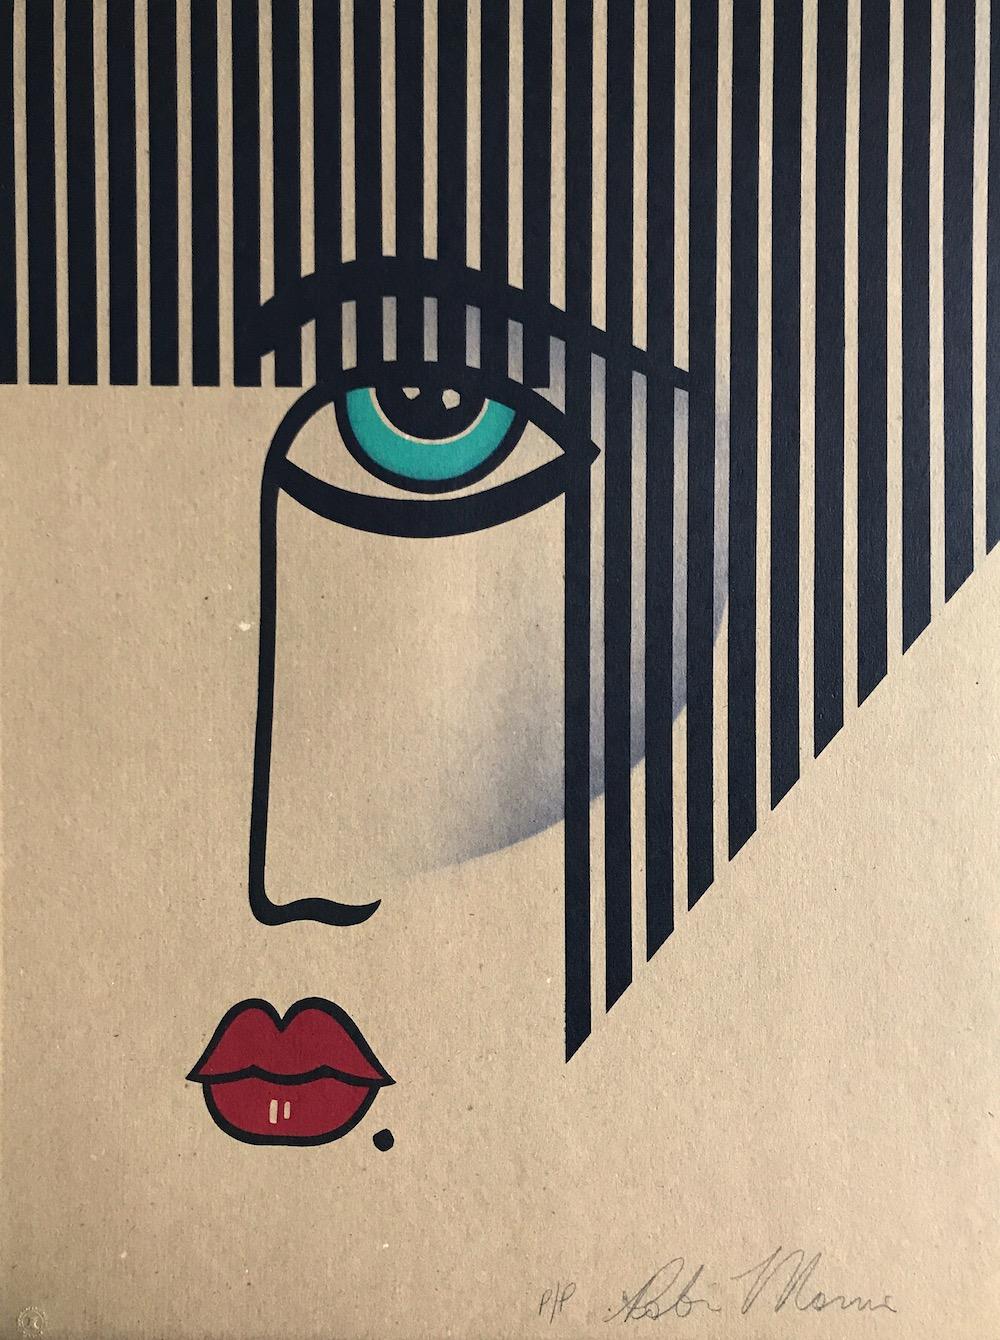 Robin Morris Print – NEU DECO signierte Lithographie, modernes Gesichtsporträt auf braunem Papier, schwarze Streifen